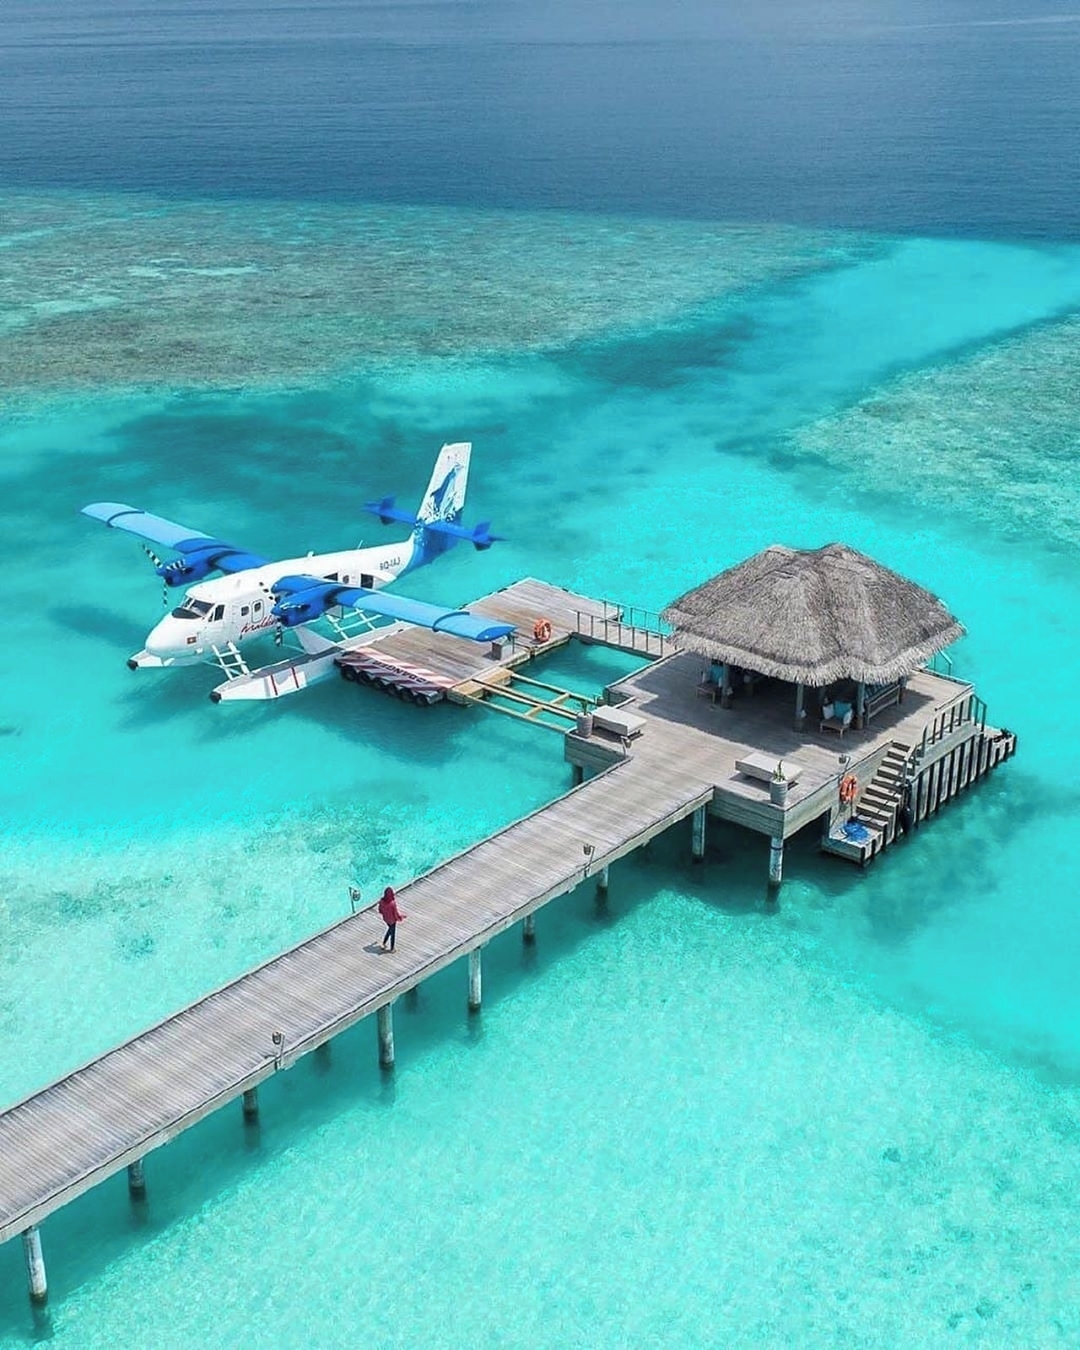 Di chuyển từ Male ra resort bạn có thể lựa chọn tàu cao tốc hoặc thuỷ phi cơ để ngắm toàn cảnh quốc đảo xinh đẹp này